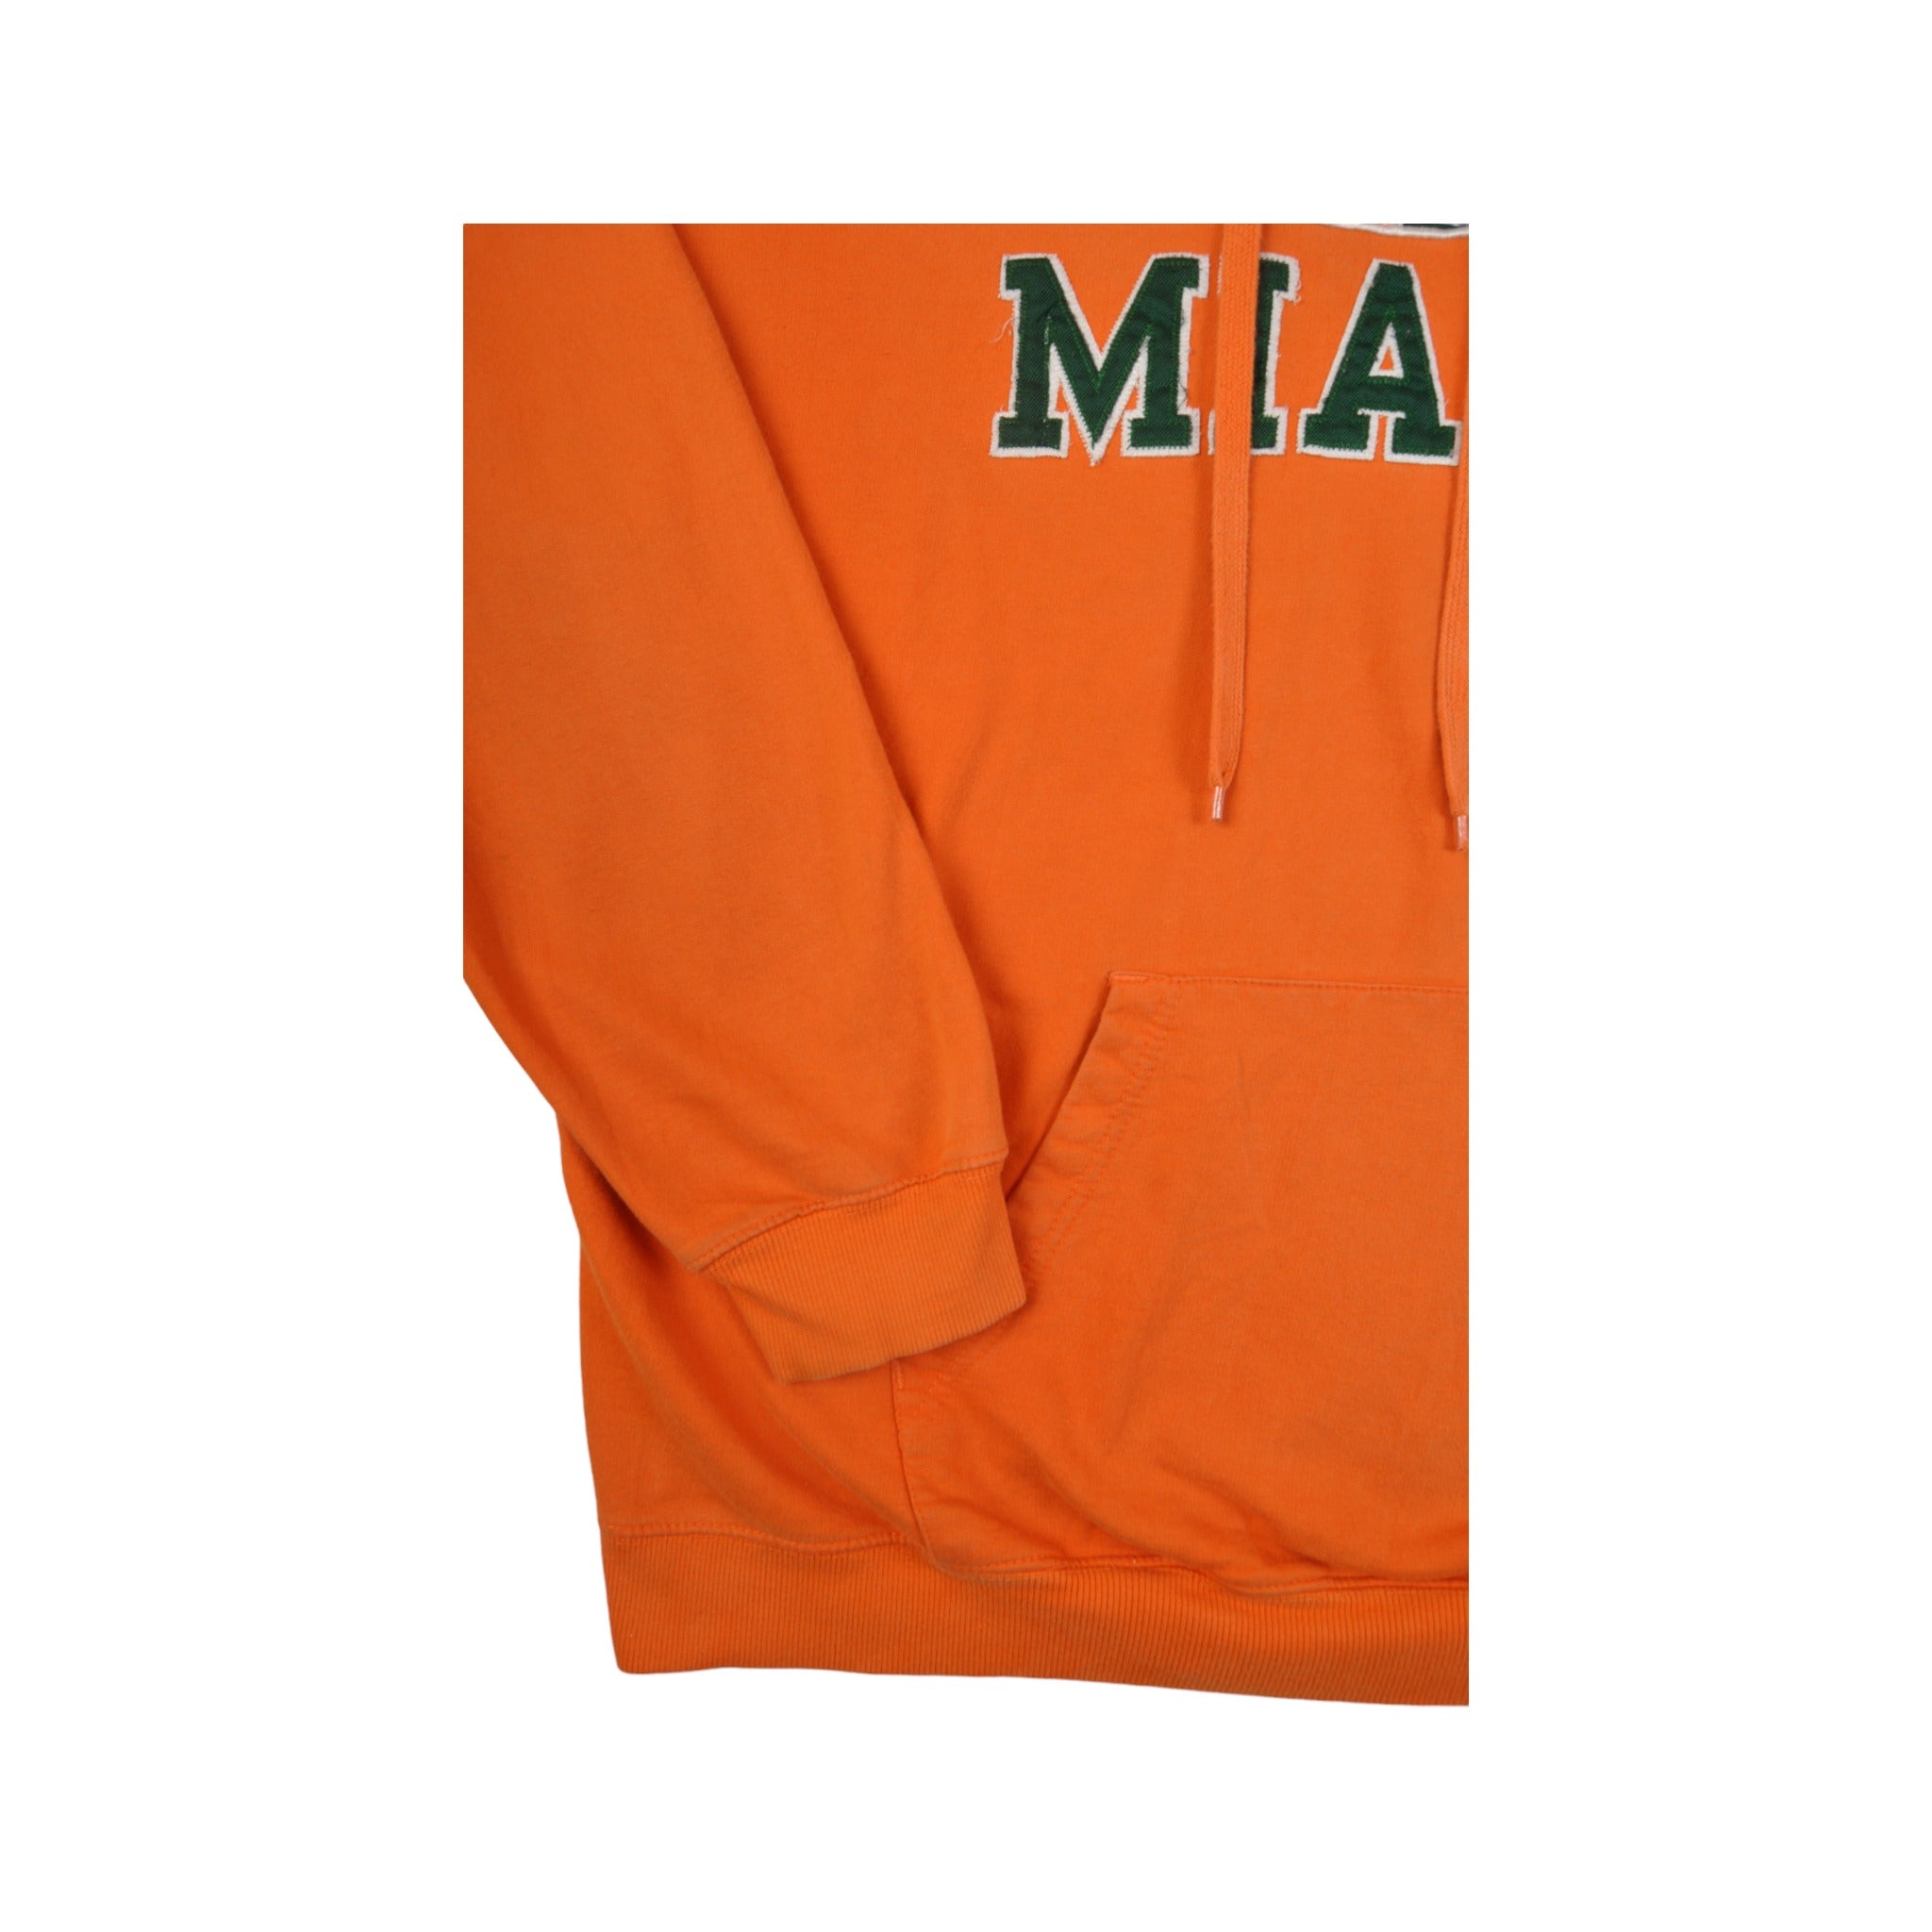 Vintage Miami Hurricanes Hoodie Sweatshirt Orange XL - Cloak Vintage